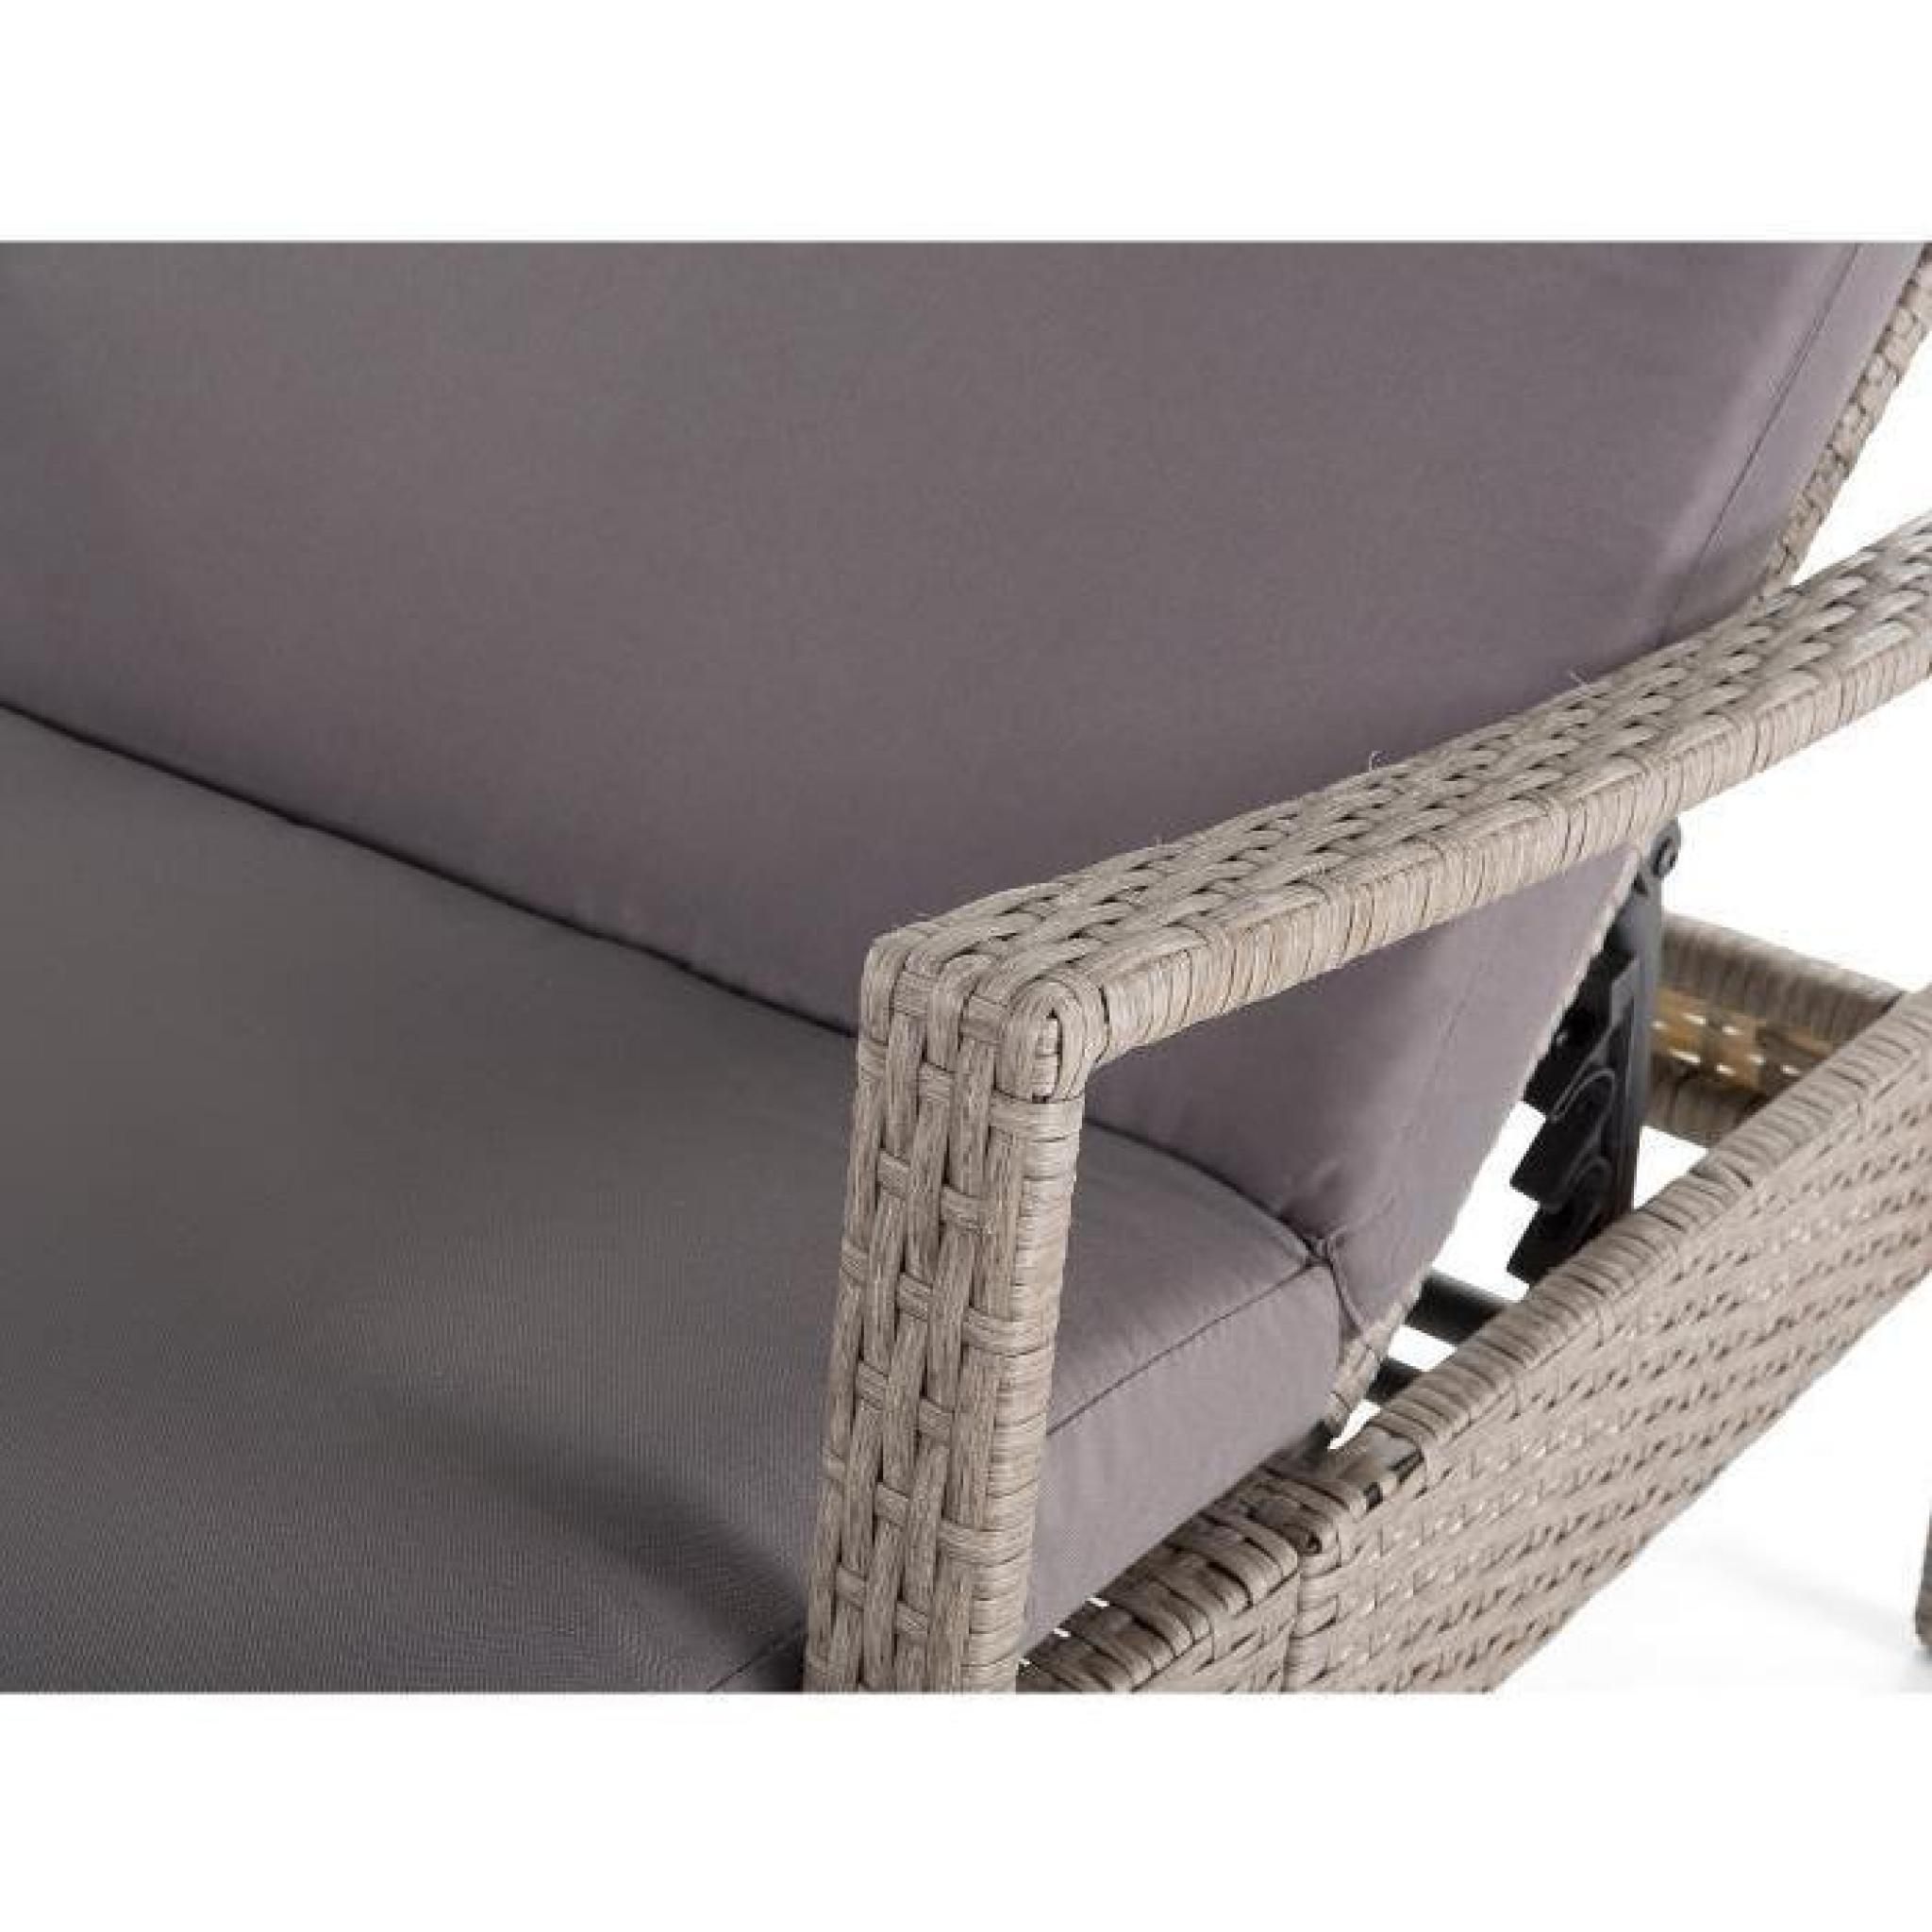 Transat en rotin beige - chaise longue avec accoudoirs - coussin gris - Vasto pas cher